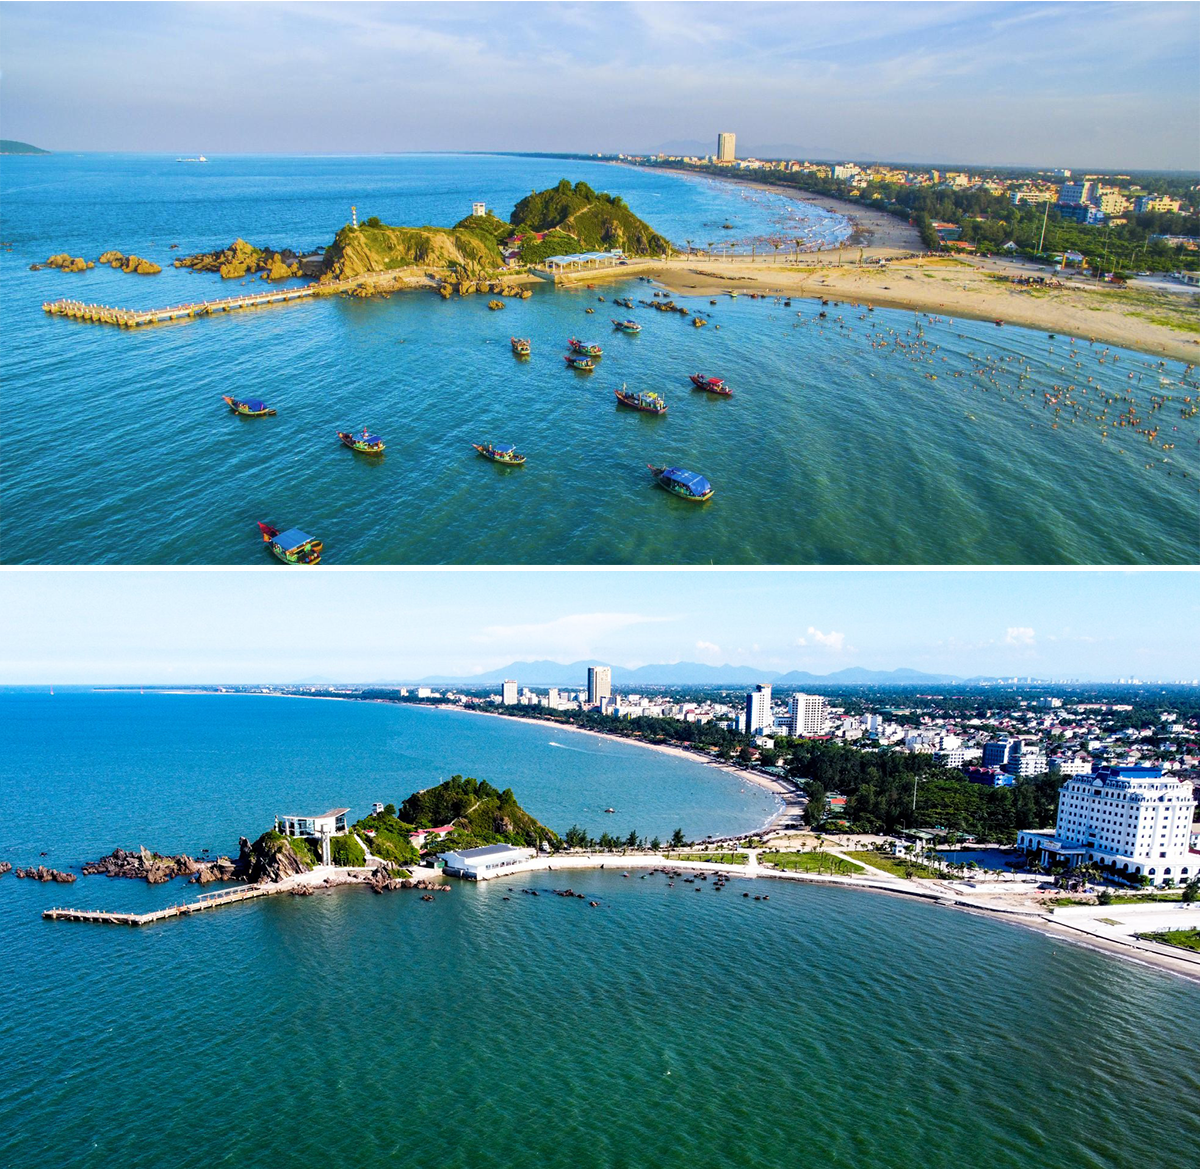 Đảo Lan Châu trước (ảnh trên) và sau khi có những hoạt động xây dựng mới. Ảnh: Sỹ Minh - Thành Cường